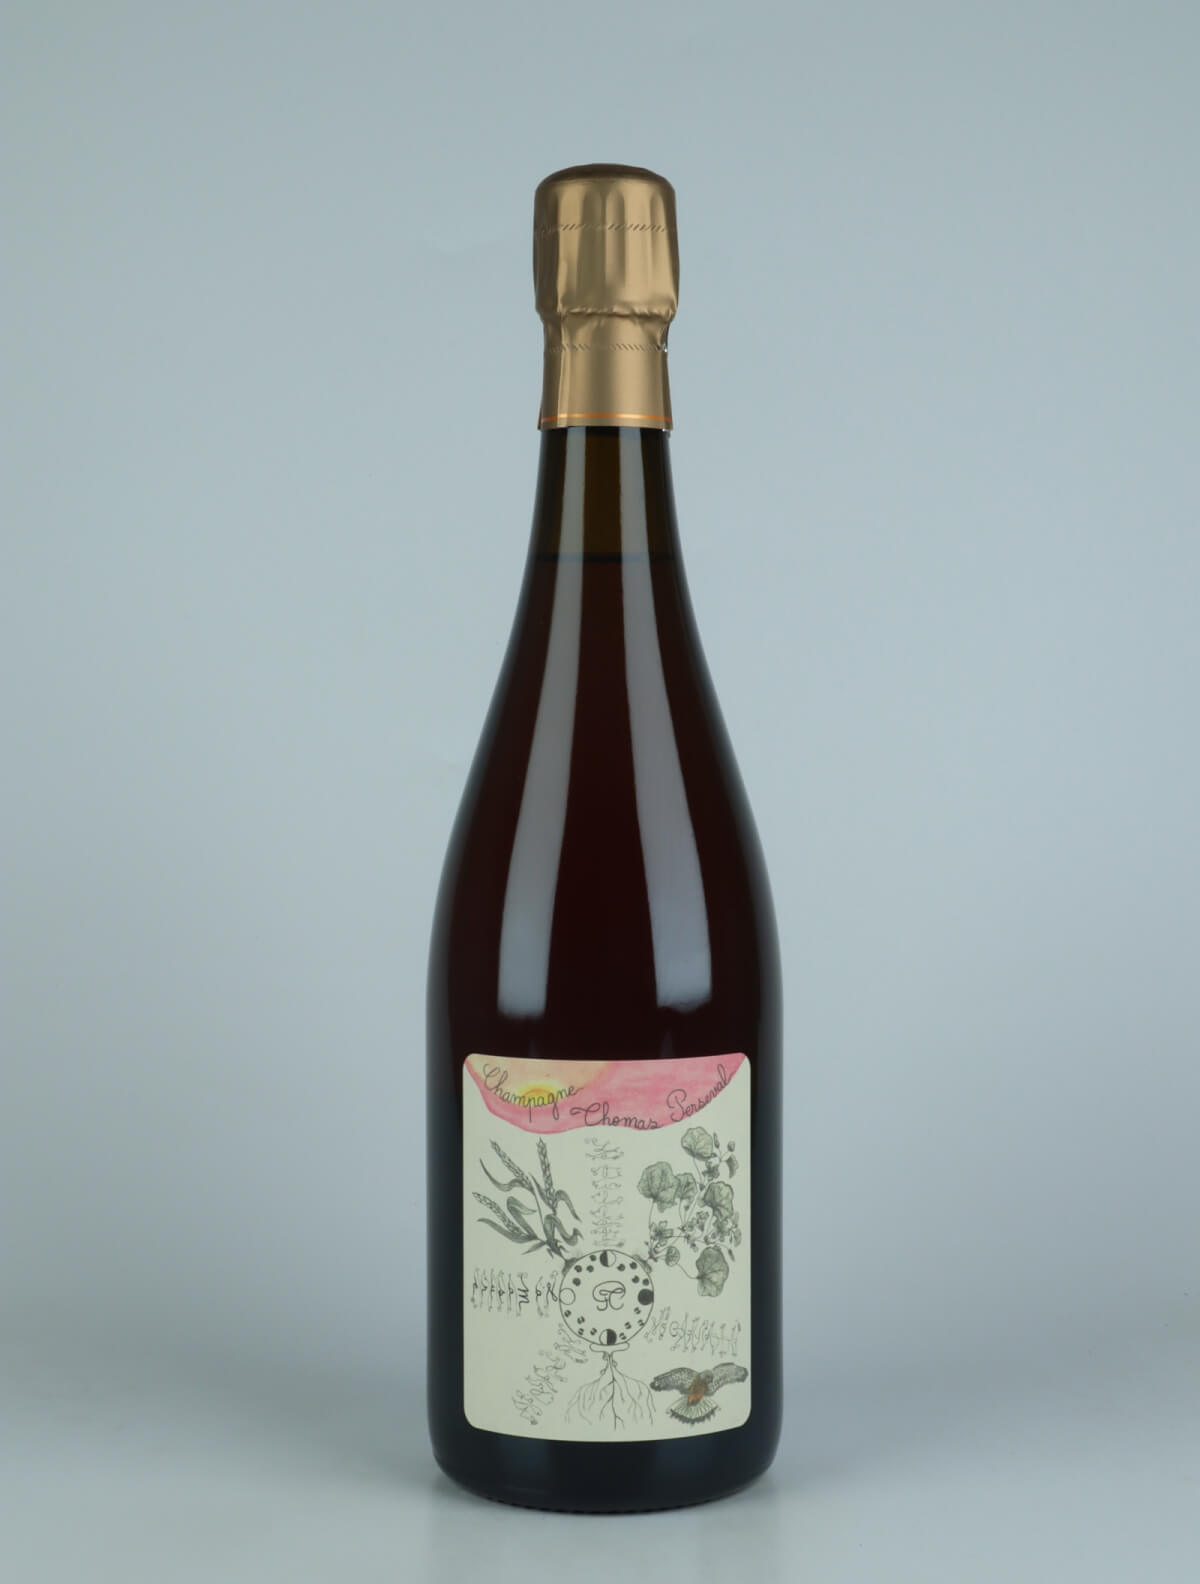 En flaske 2020 Chamery 1. Cru - La Masure - Rosé de macération Mousserende fra Thomas Perseval, Champagne i Frankrig